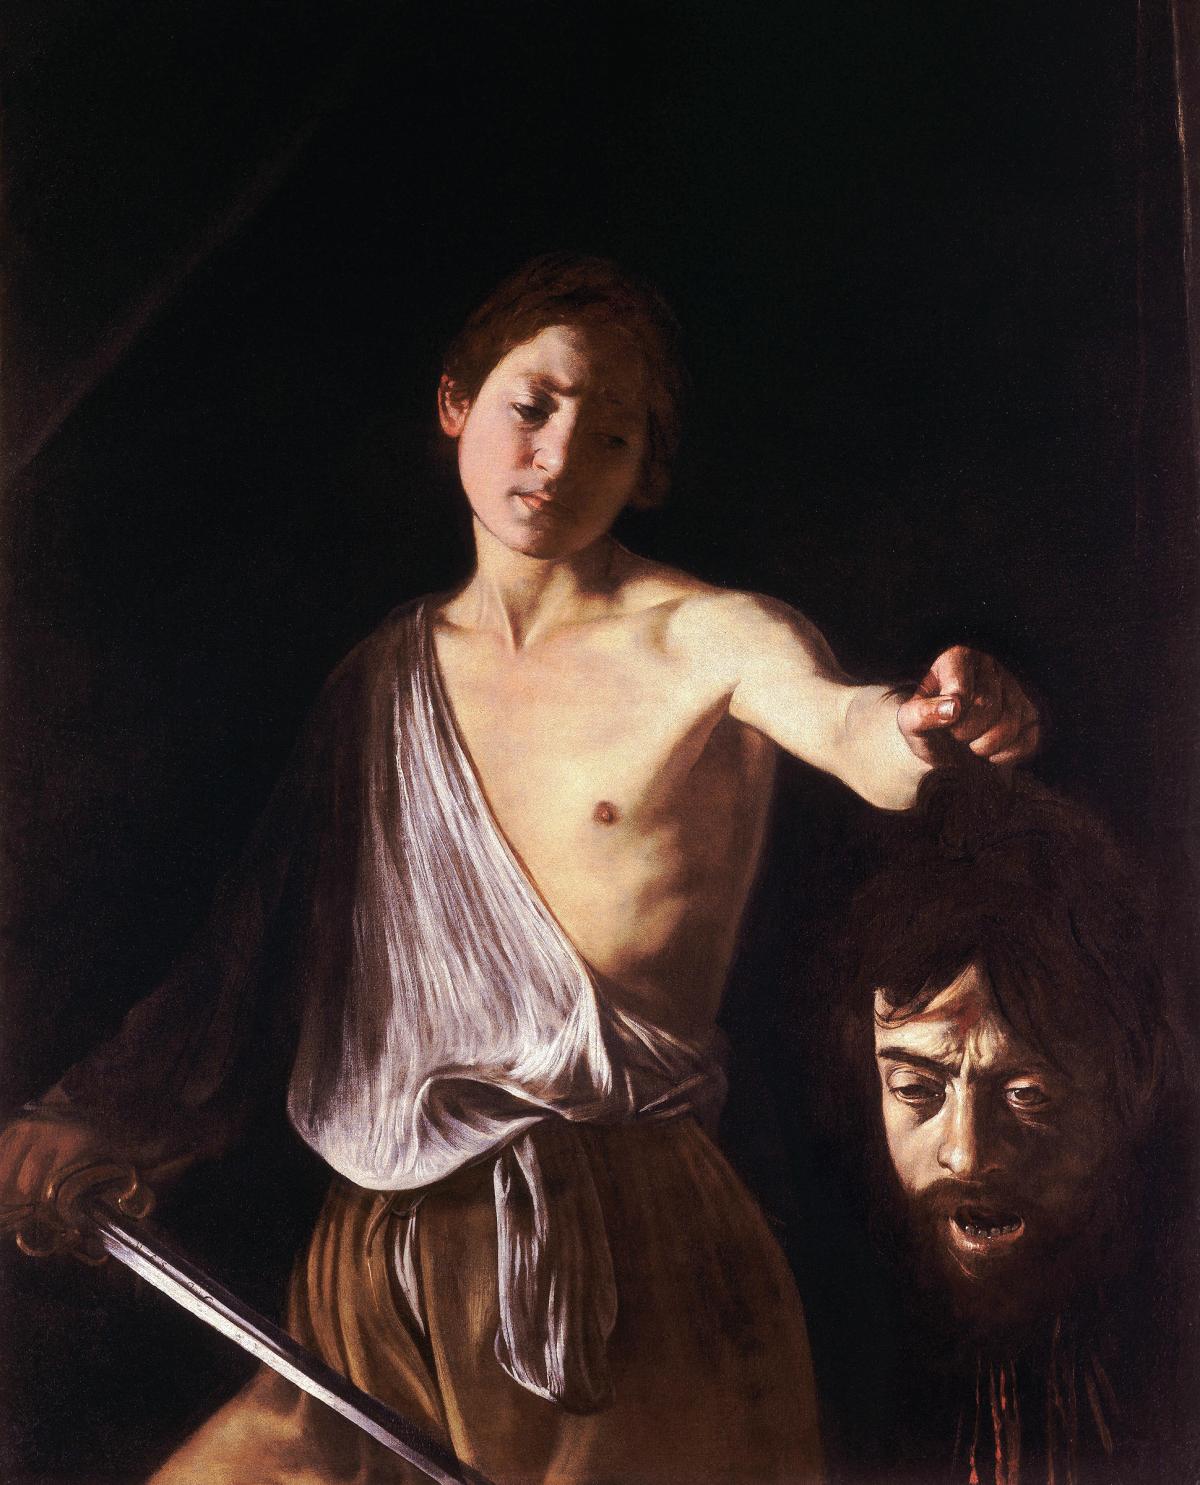 Caravaggio's David with the Head of Goliath